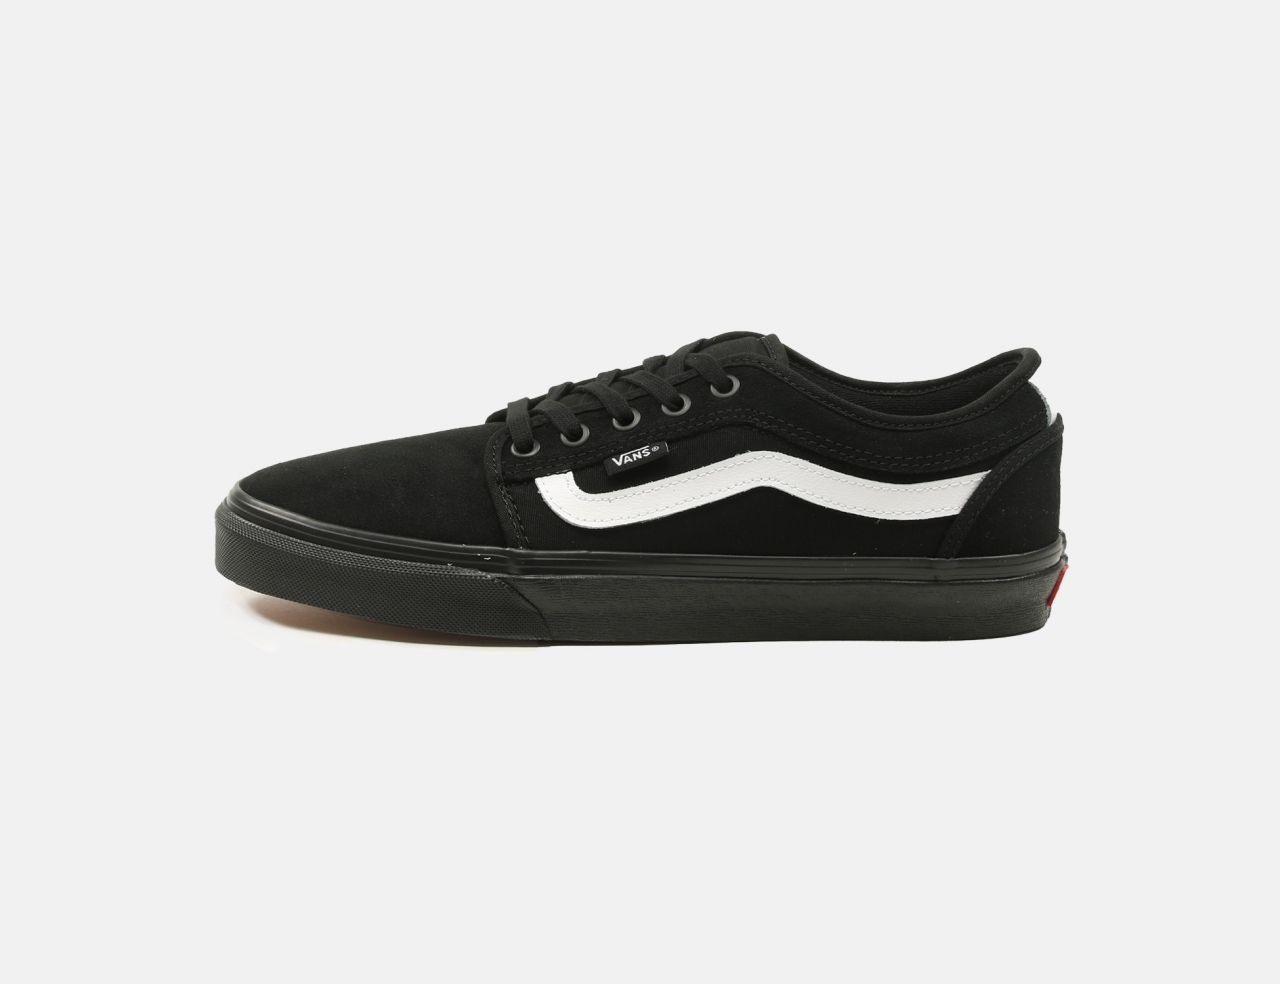 VANS MN Chukka Low Sidestripe Sneaker - Black / Black / White